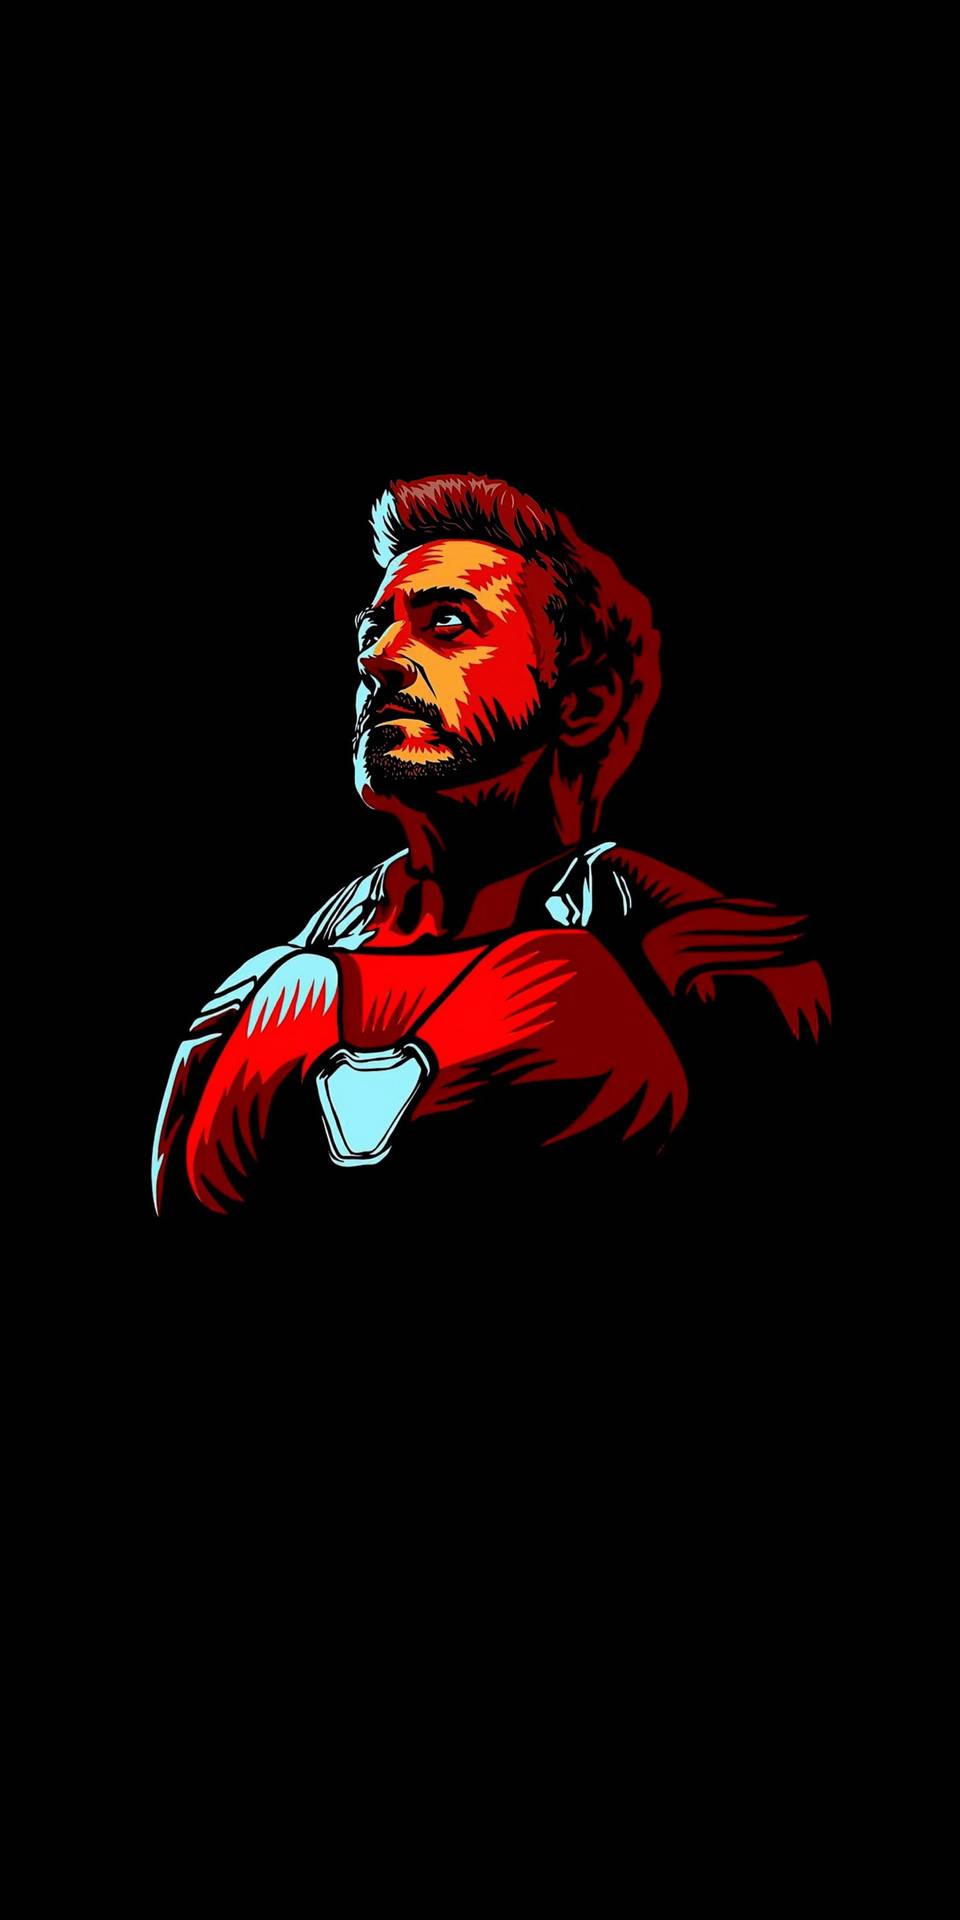 Tony Stark Iron Man Android Wallpaper